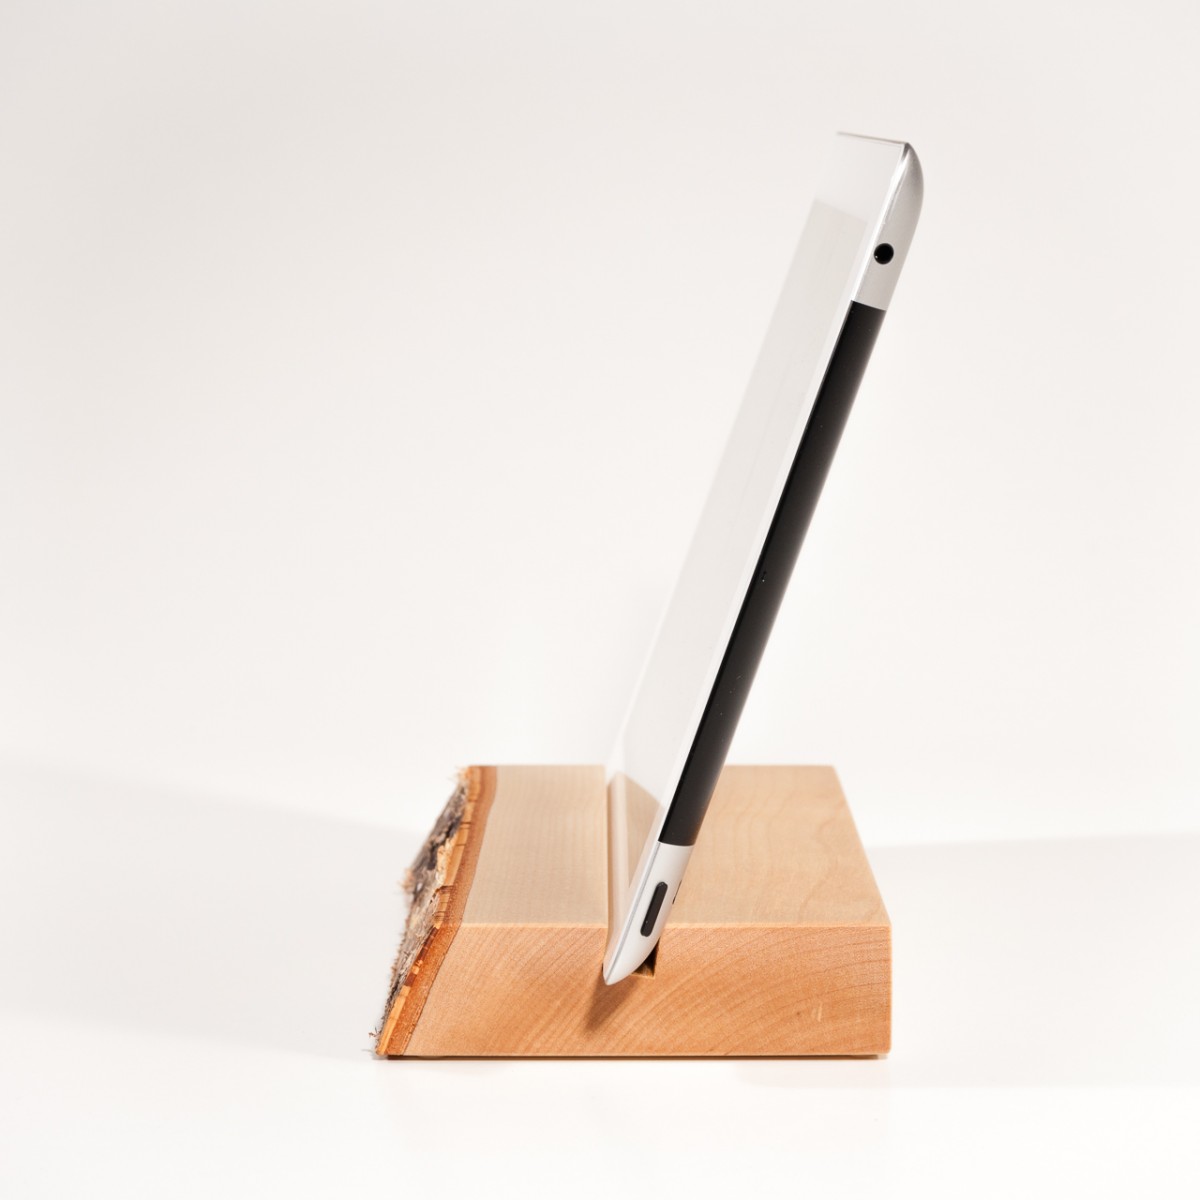 Halterung / Halter für iPad und tablet aus Holz